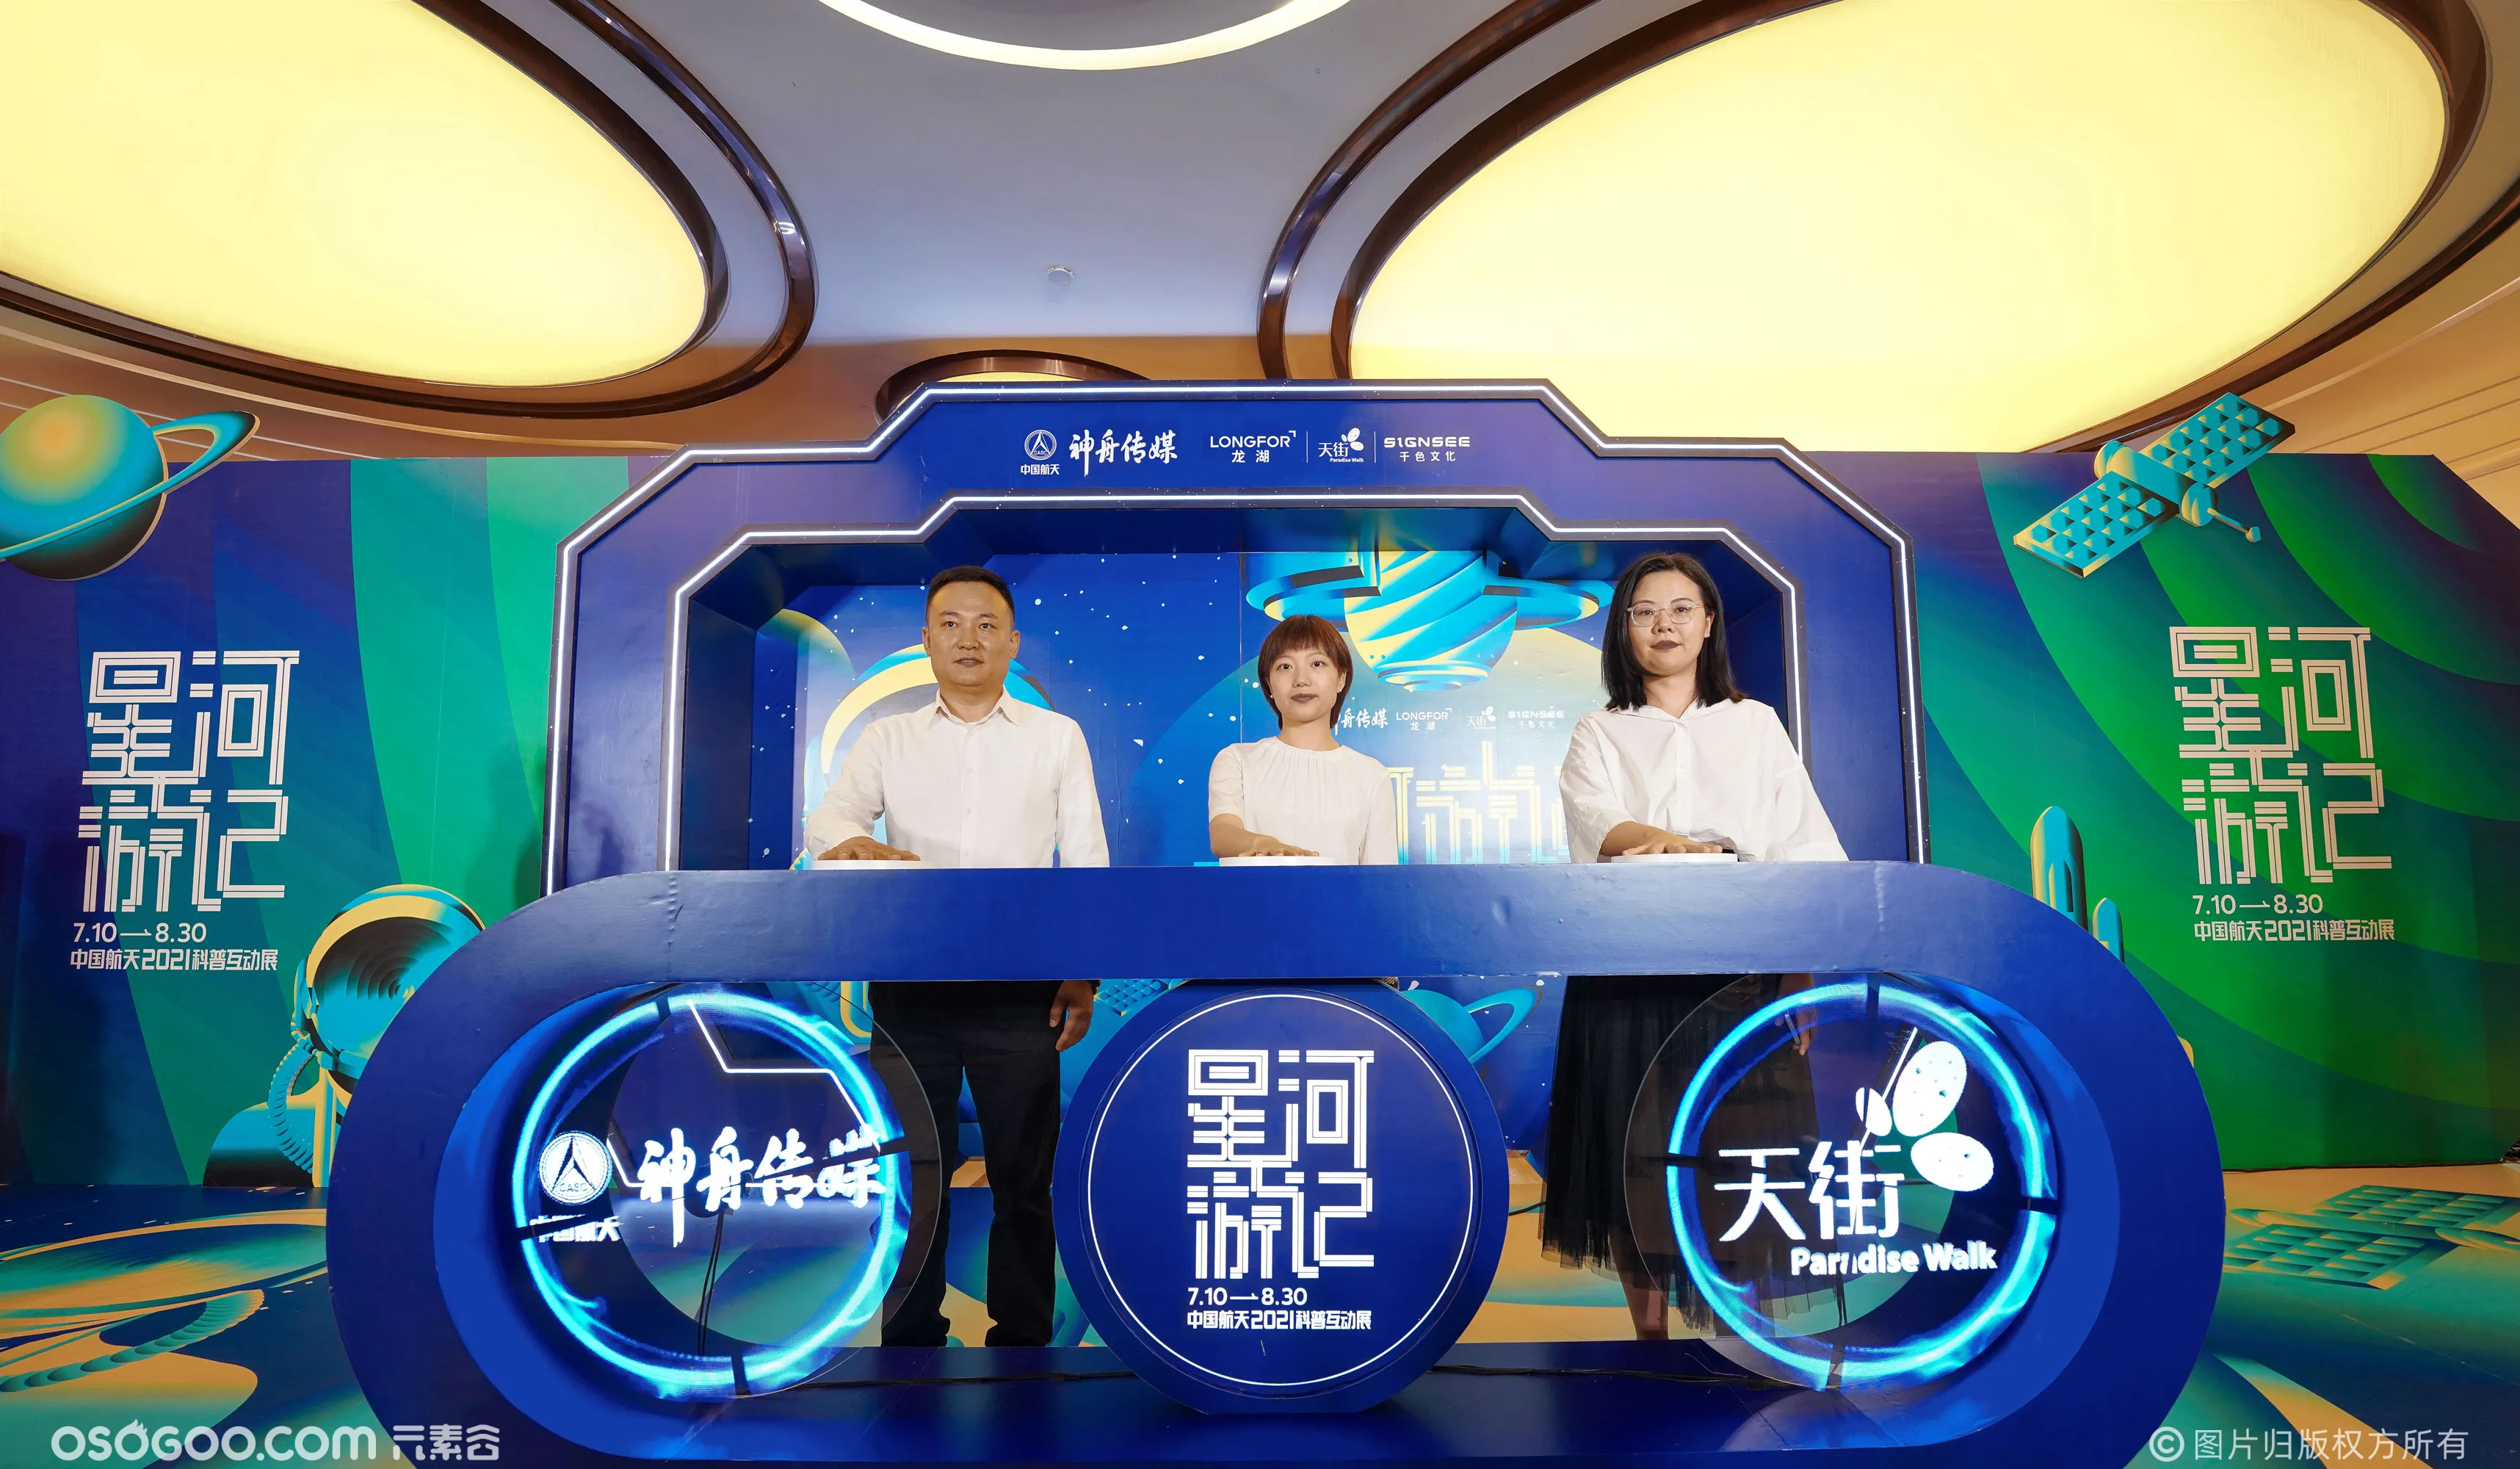 星河游记—中国航天2021科普互动展 西南首展